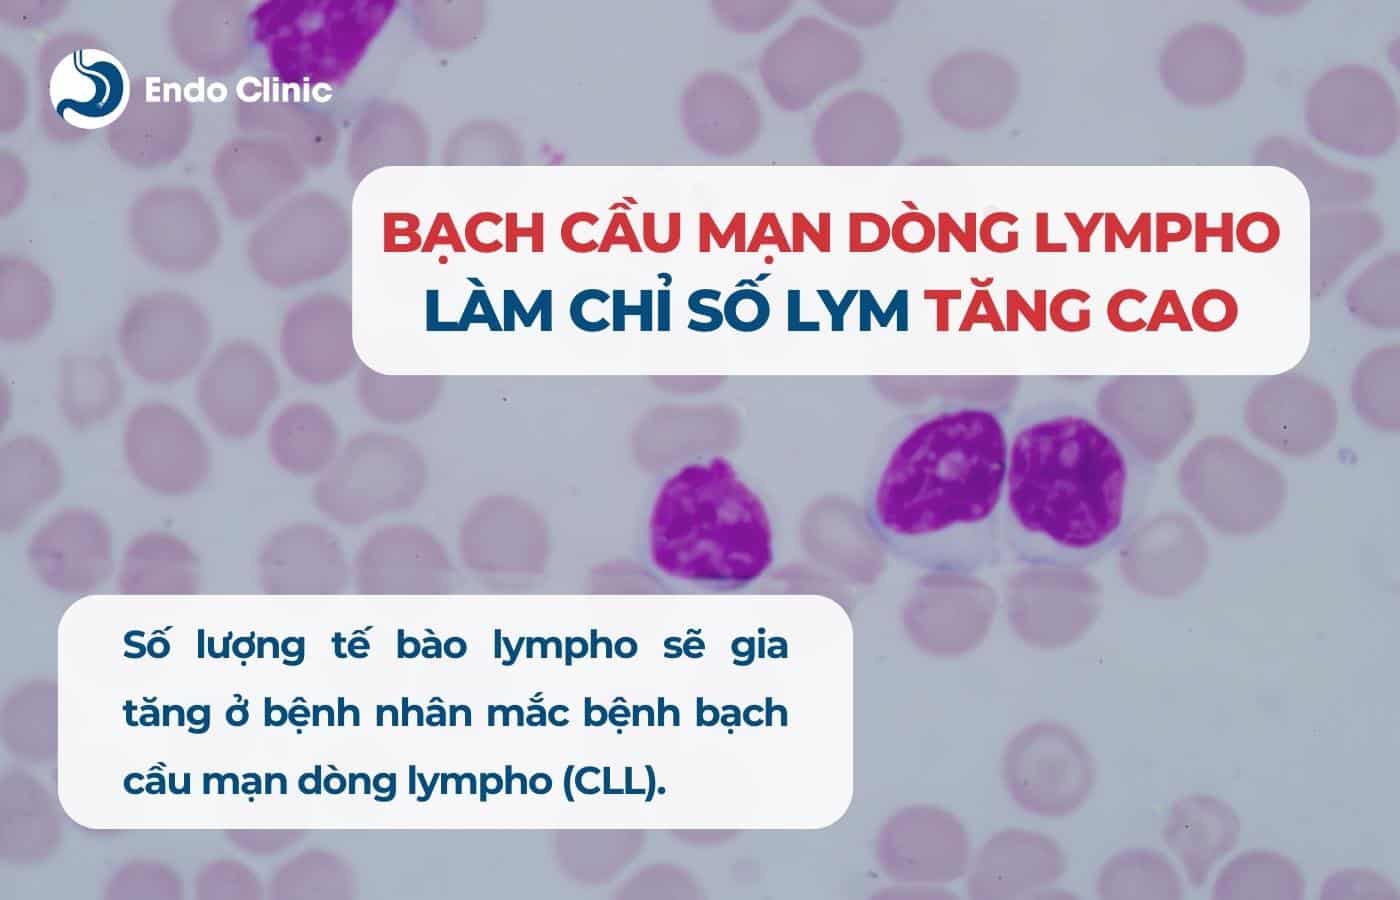 Bệnh bạch cầu mạn dòng lympho (CLL)